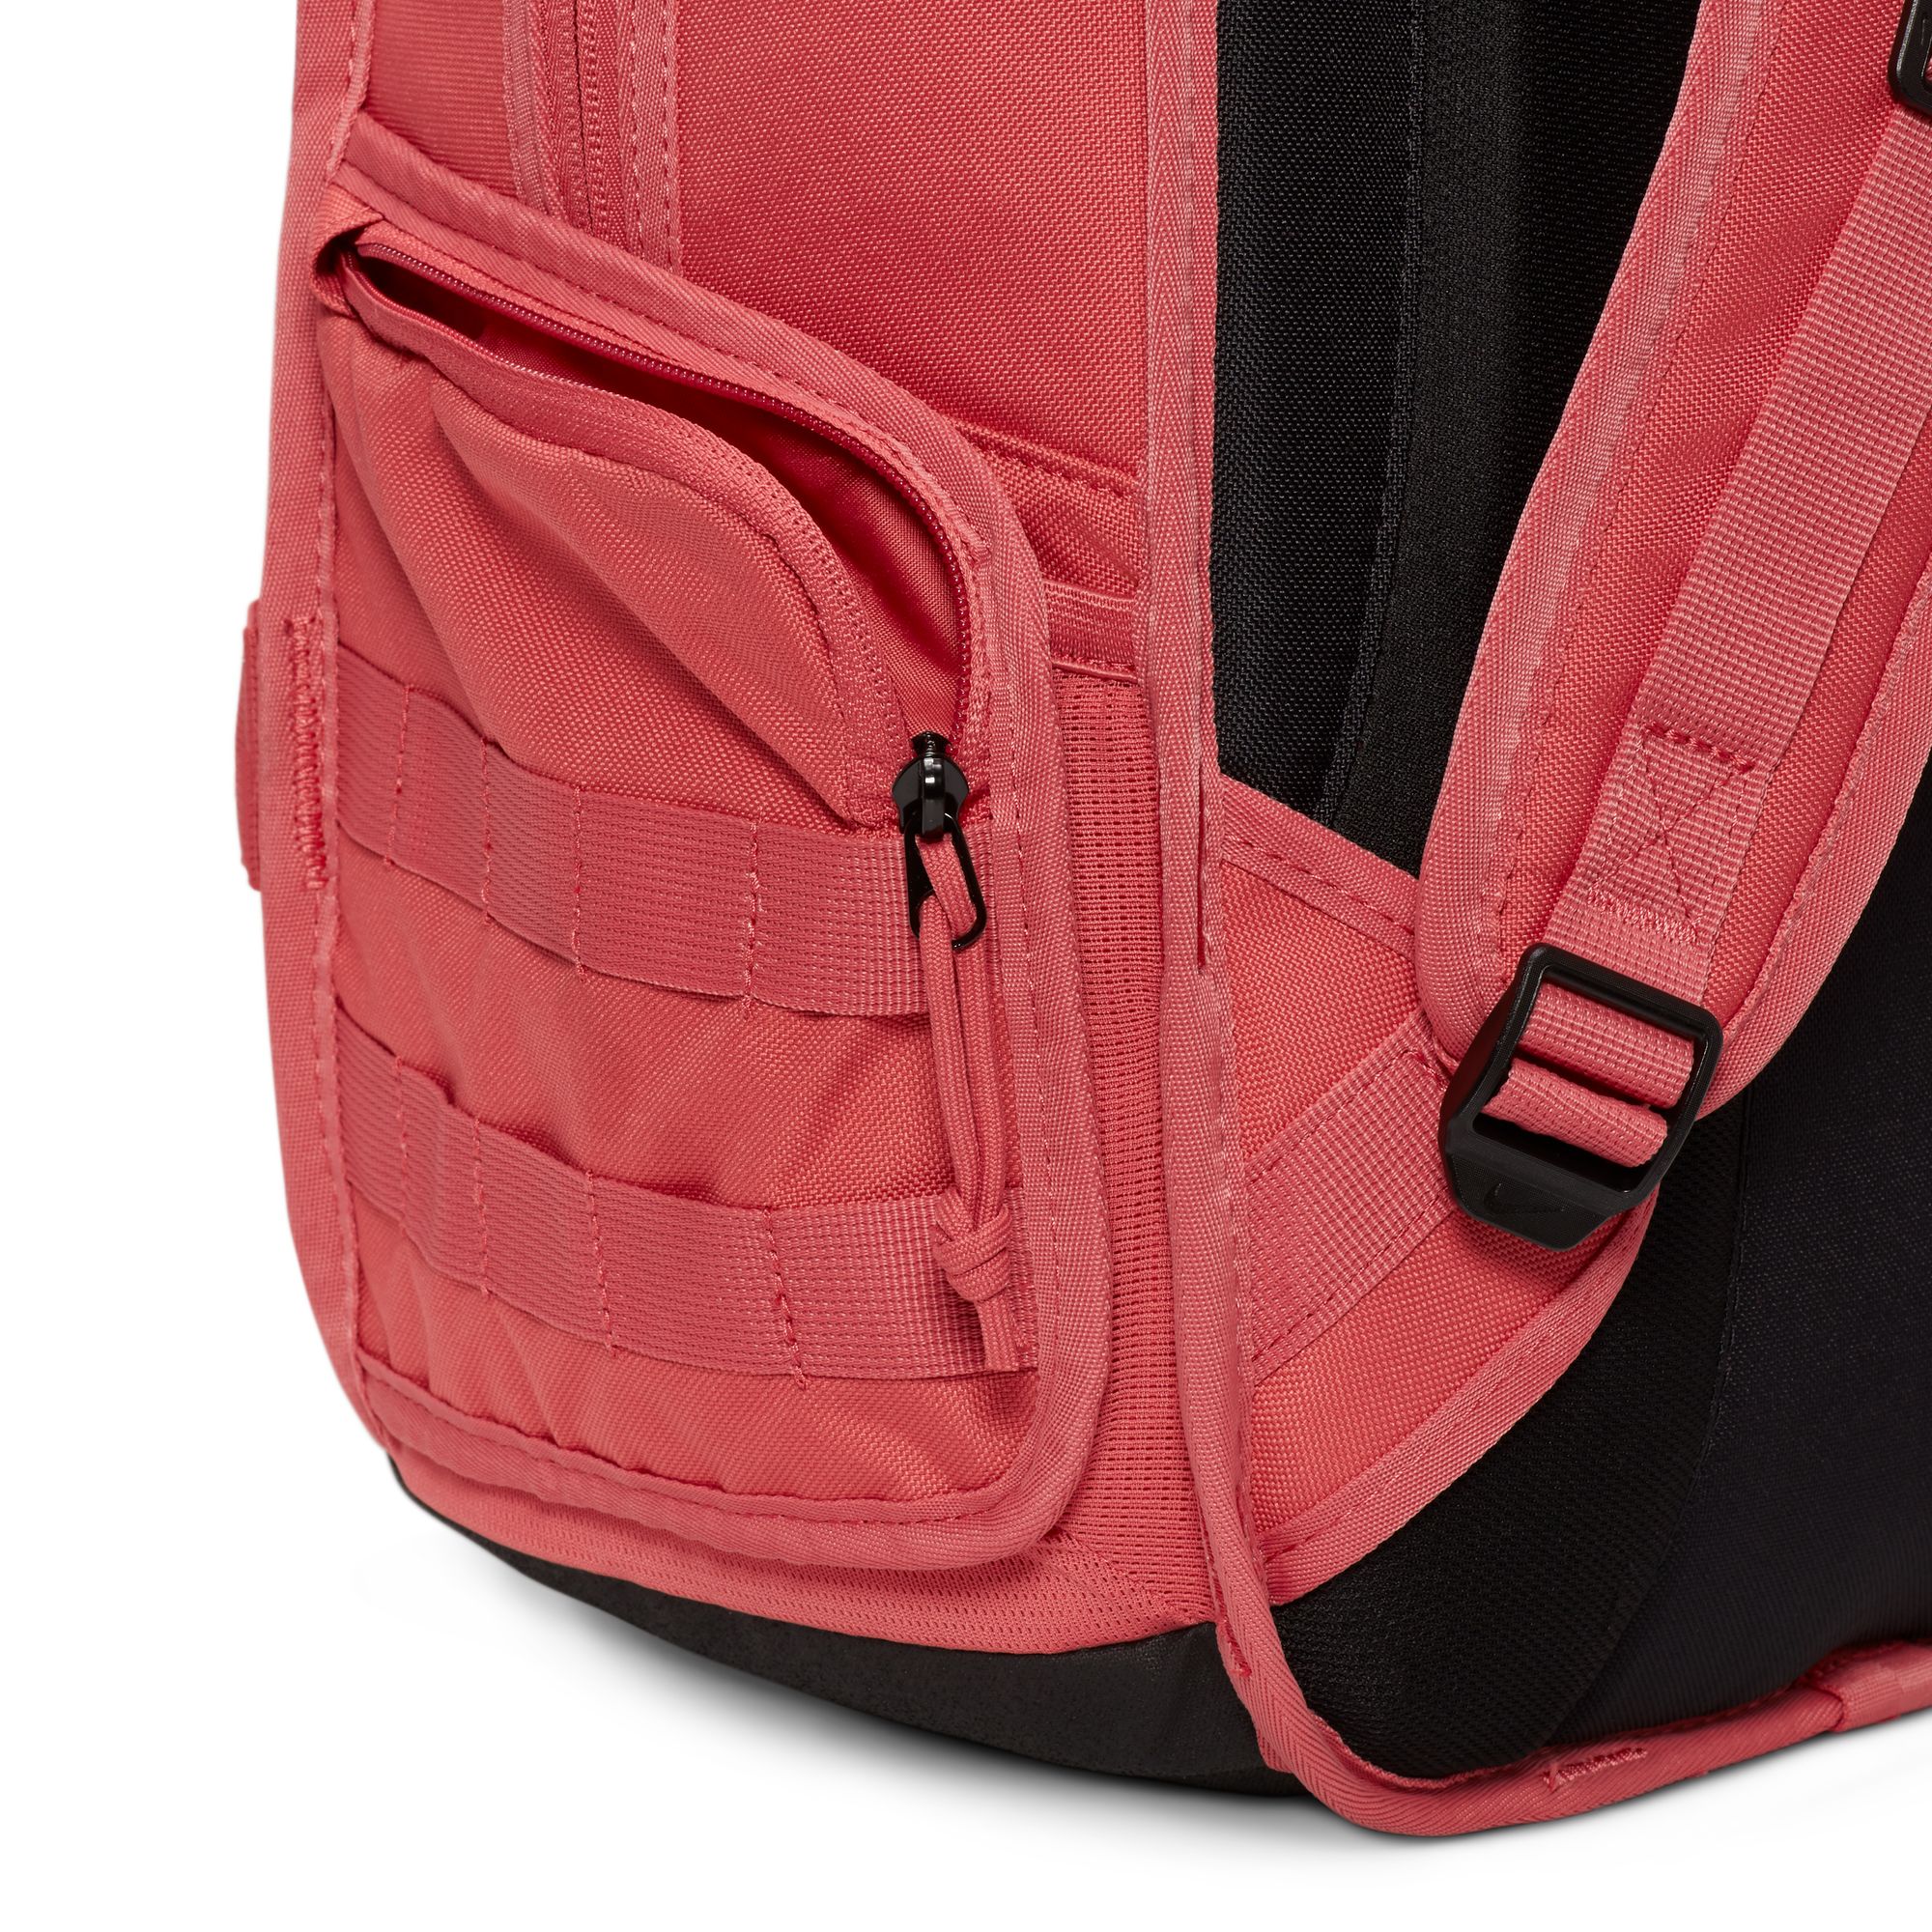  Nike Sportswear RPM Backpack Adobe